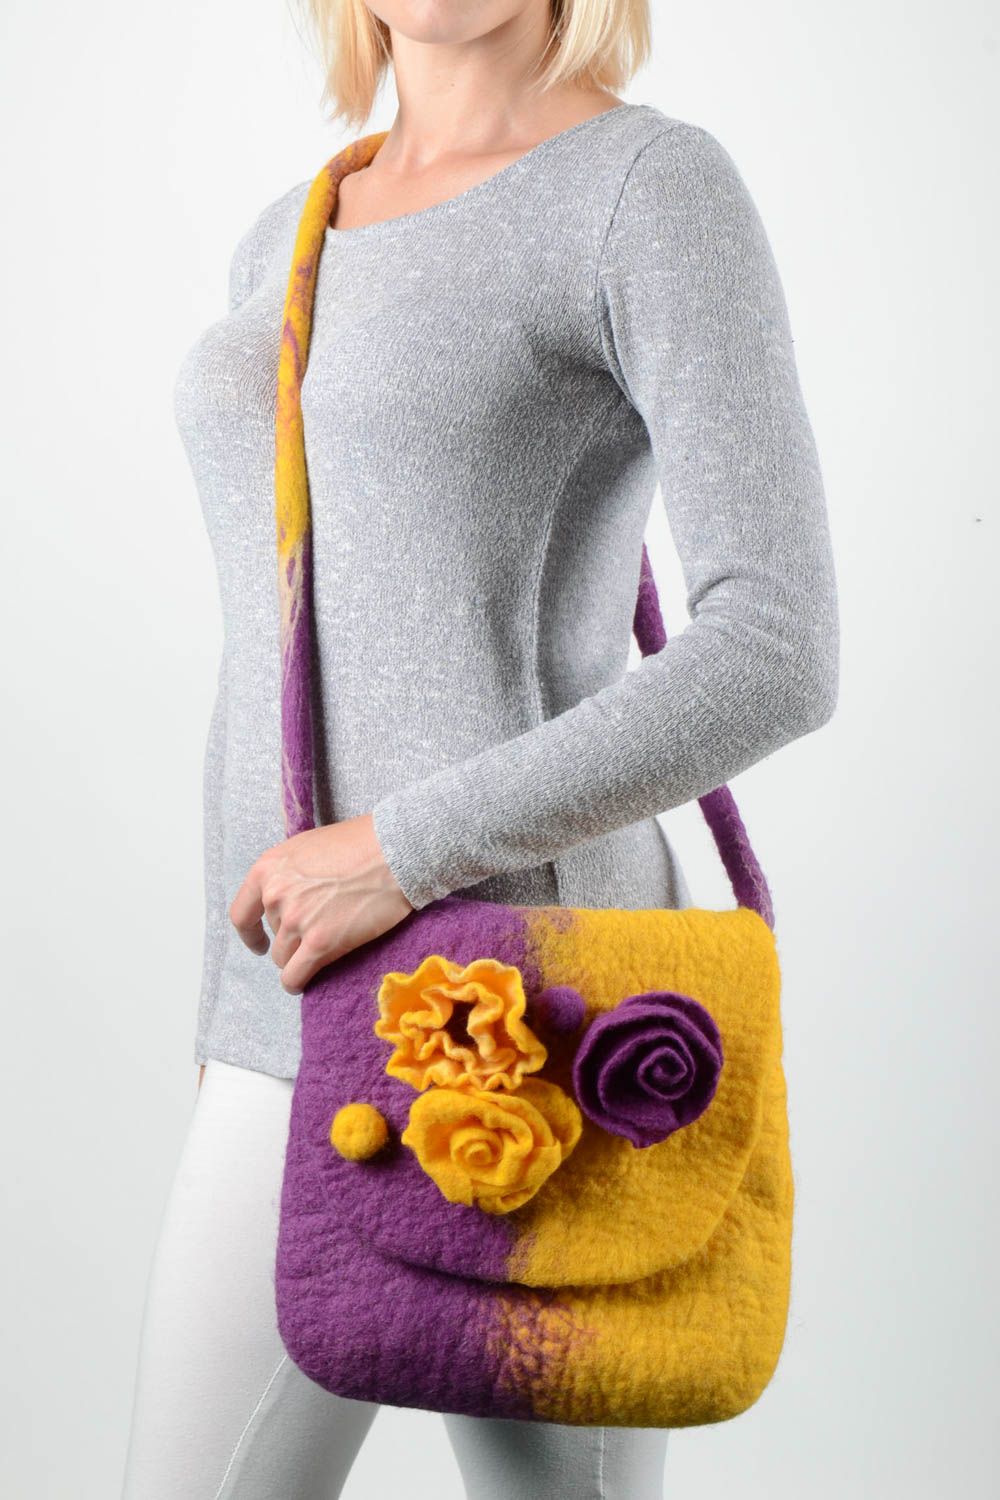 Handmade bag designer bag woolen bag felting bag gift ideas summer bag photo 1